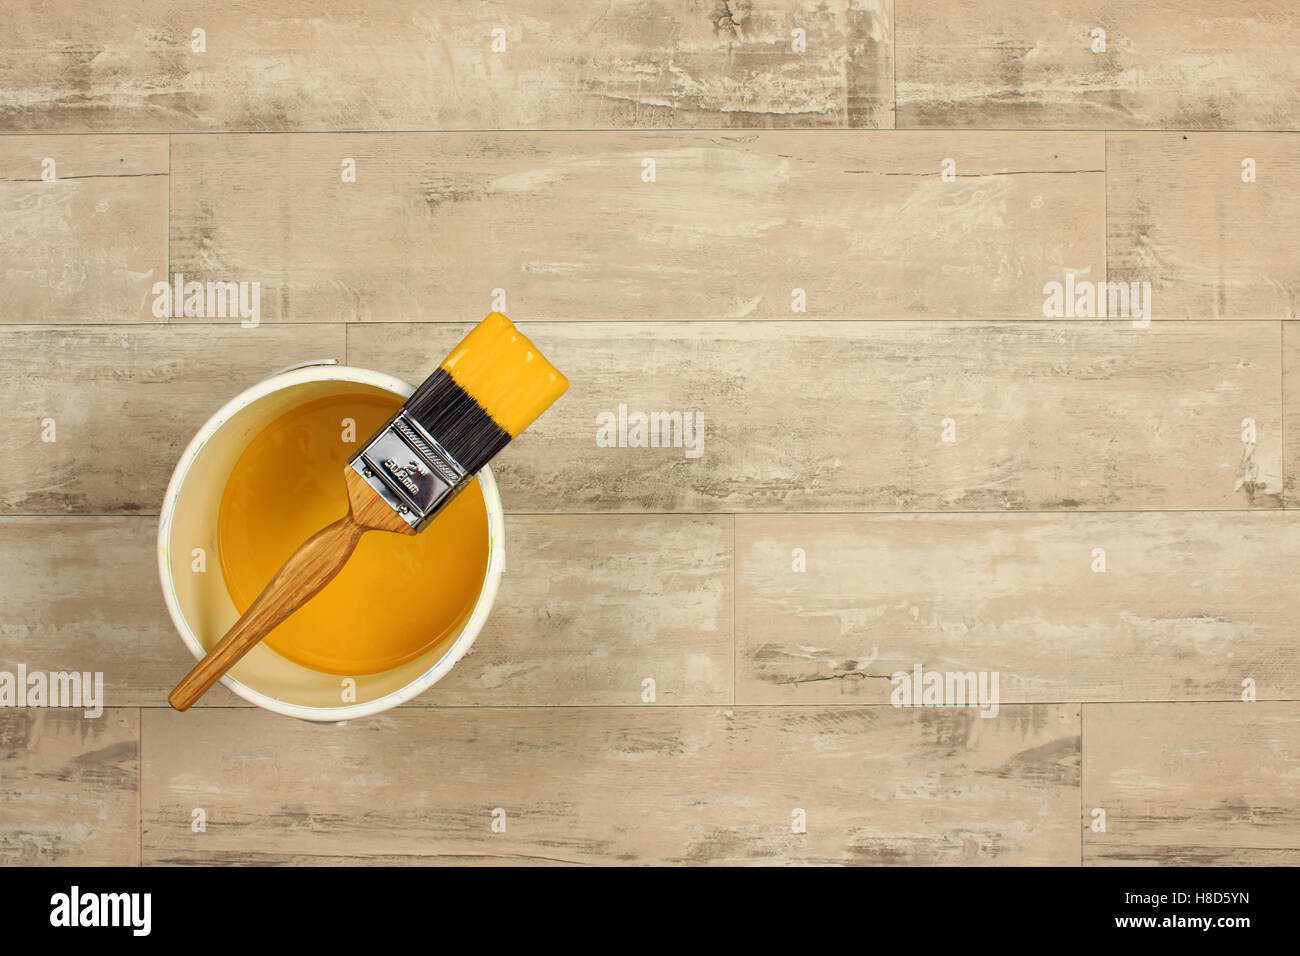 geladenen Pinsel über eine weiße Farbe Wasserkocher gelegt gefüllt mit gelber Farbe auf einen Holzfußboden shabby Stil Stockfoto